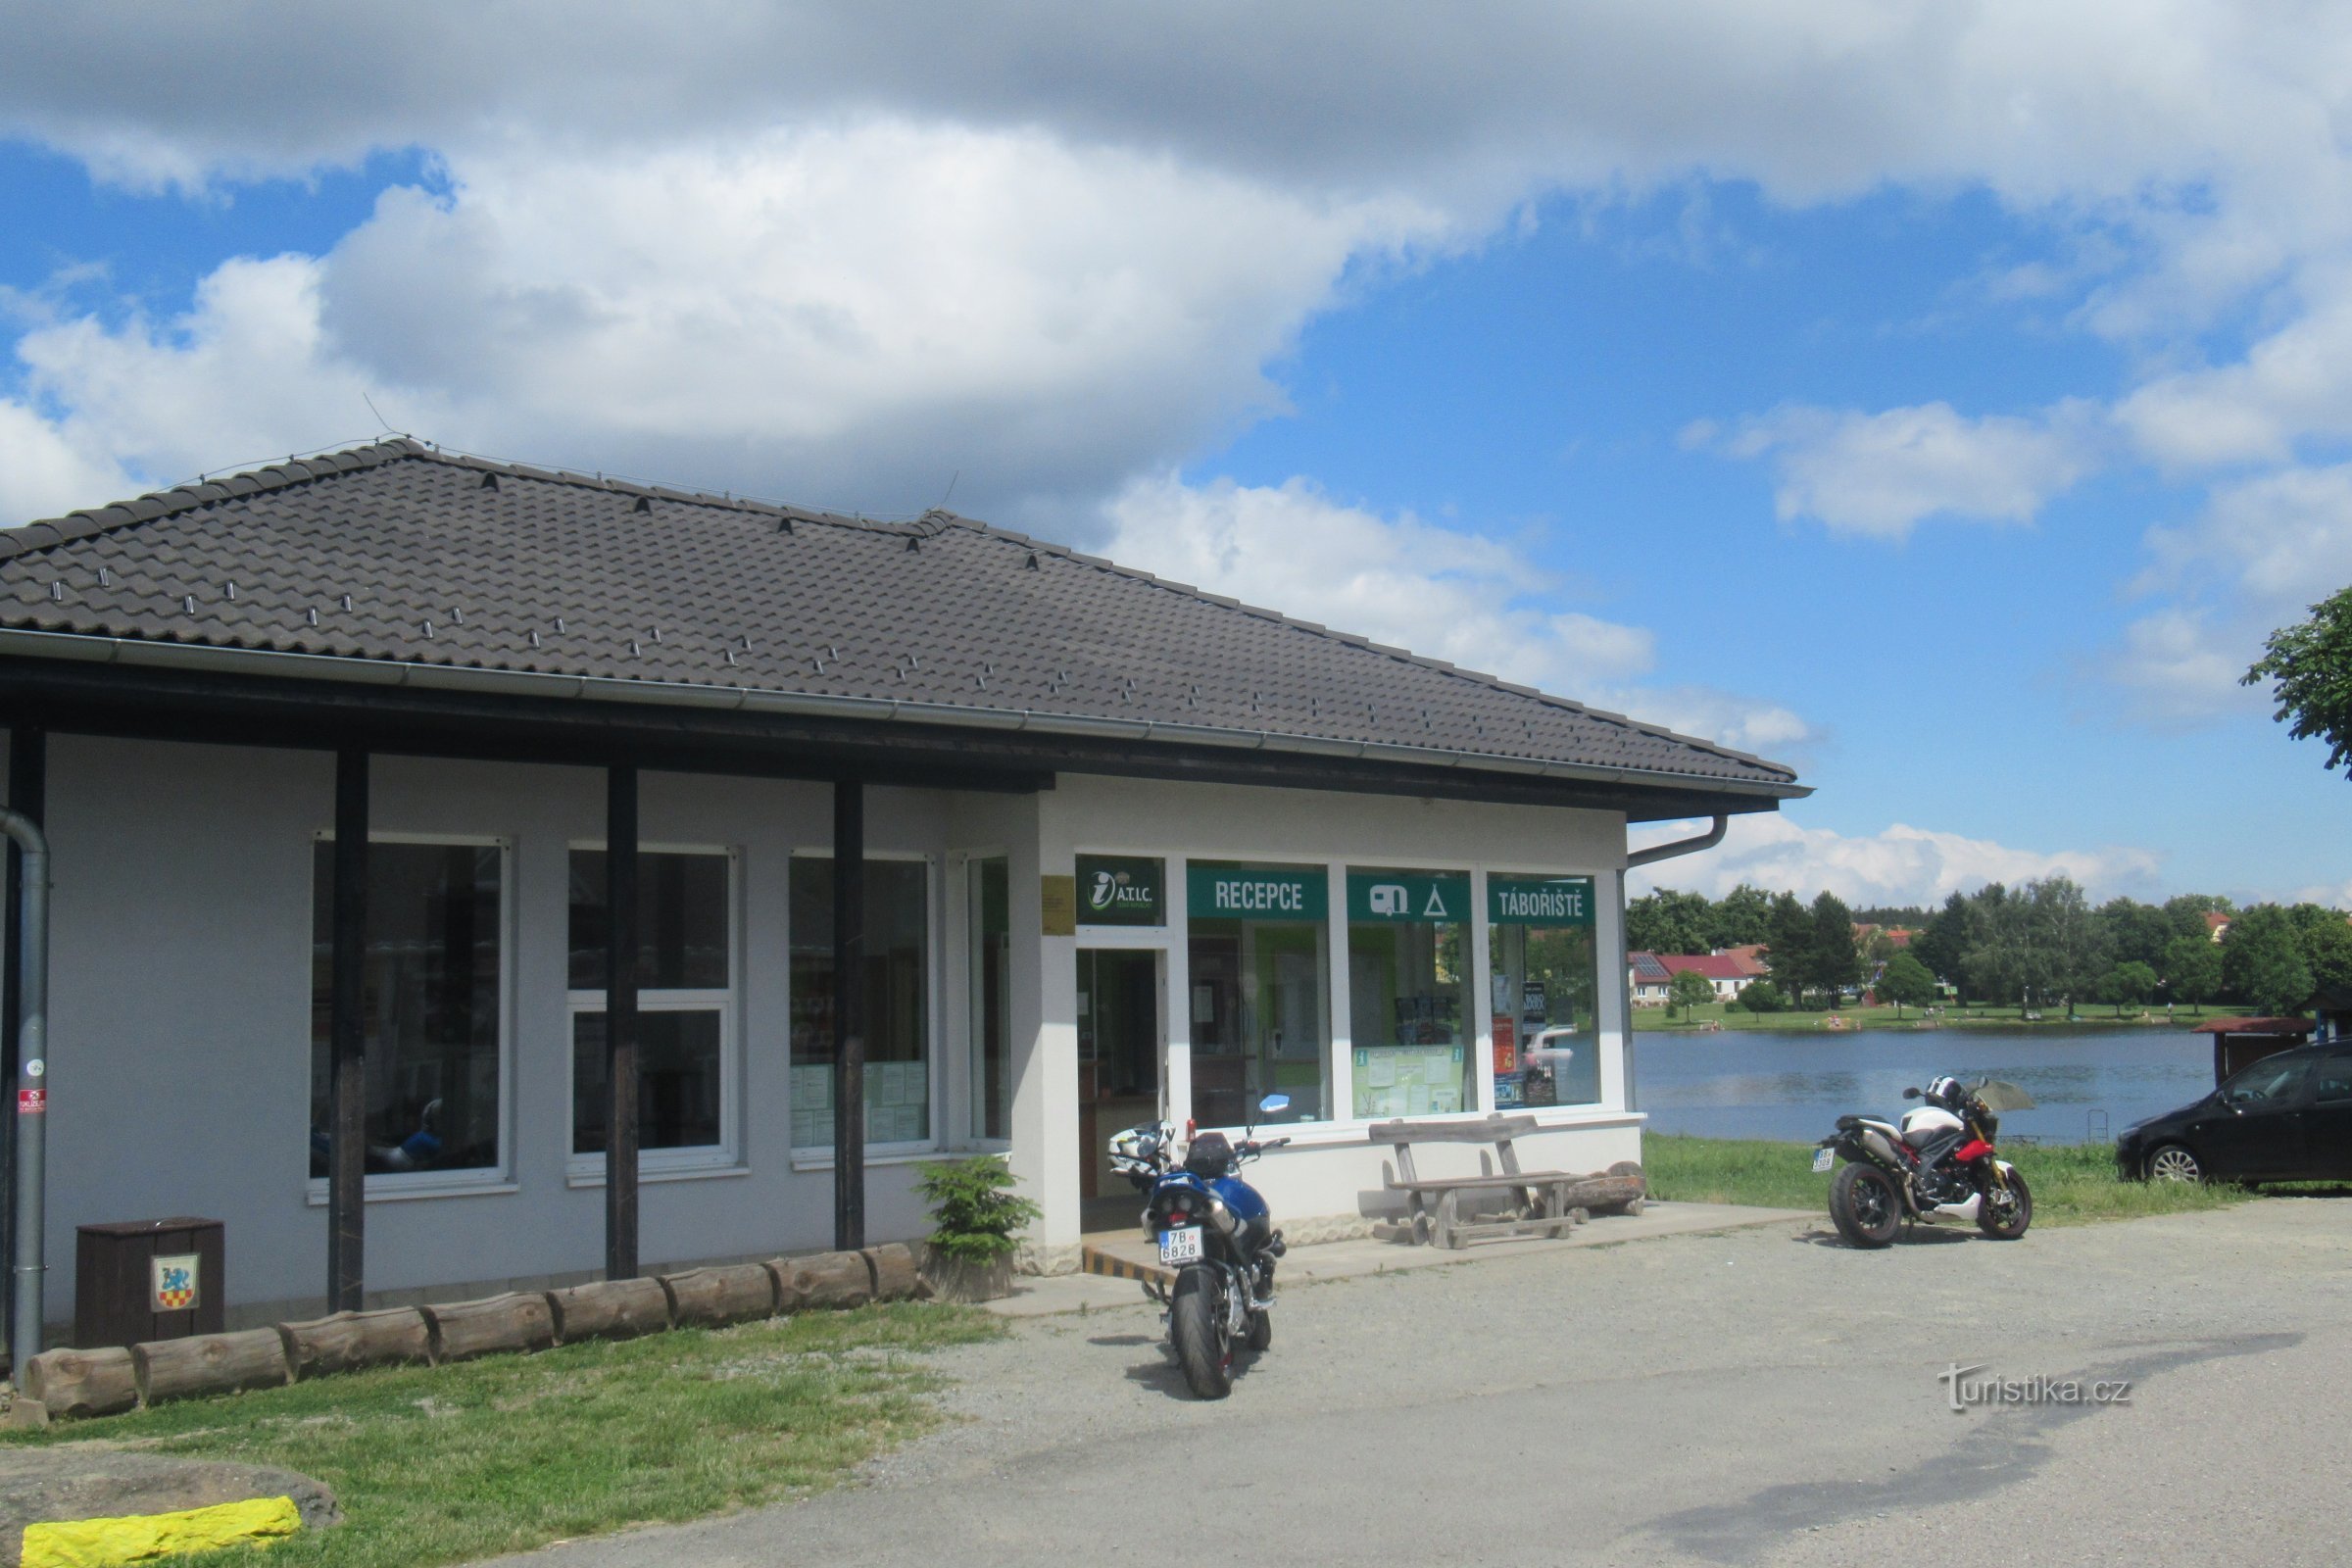 Suchý - Turistički informativni centar